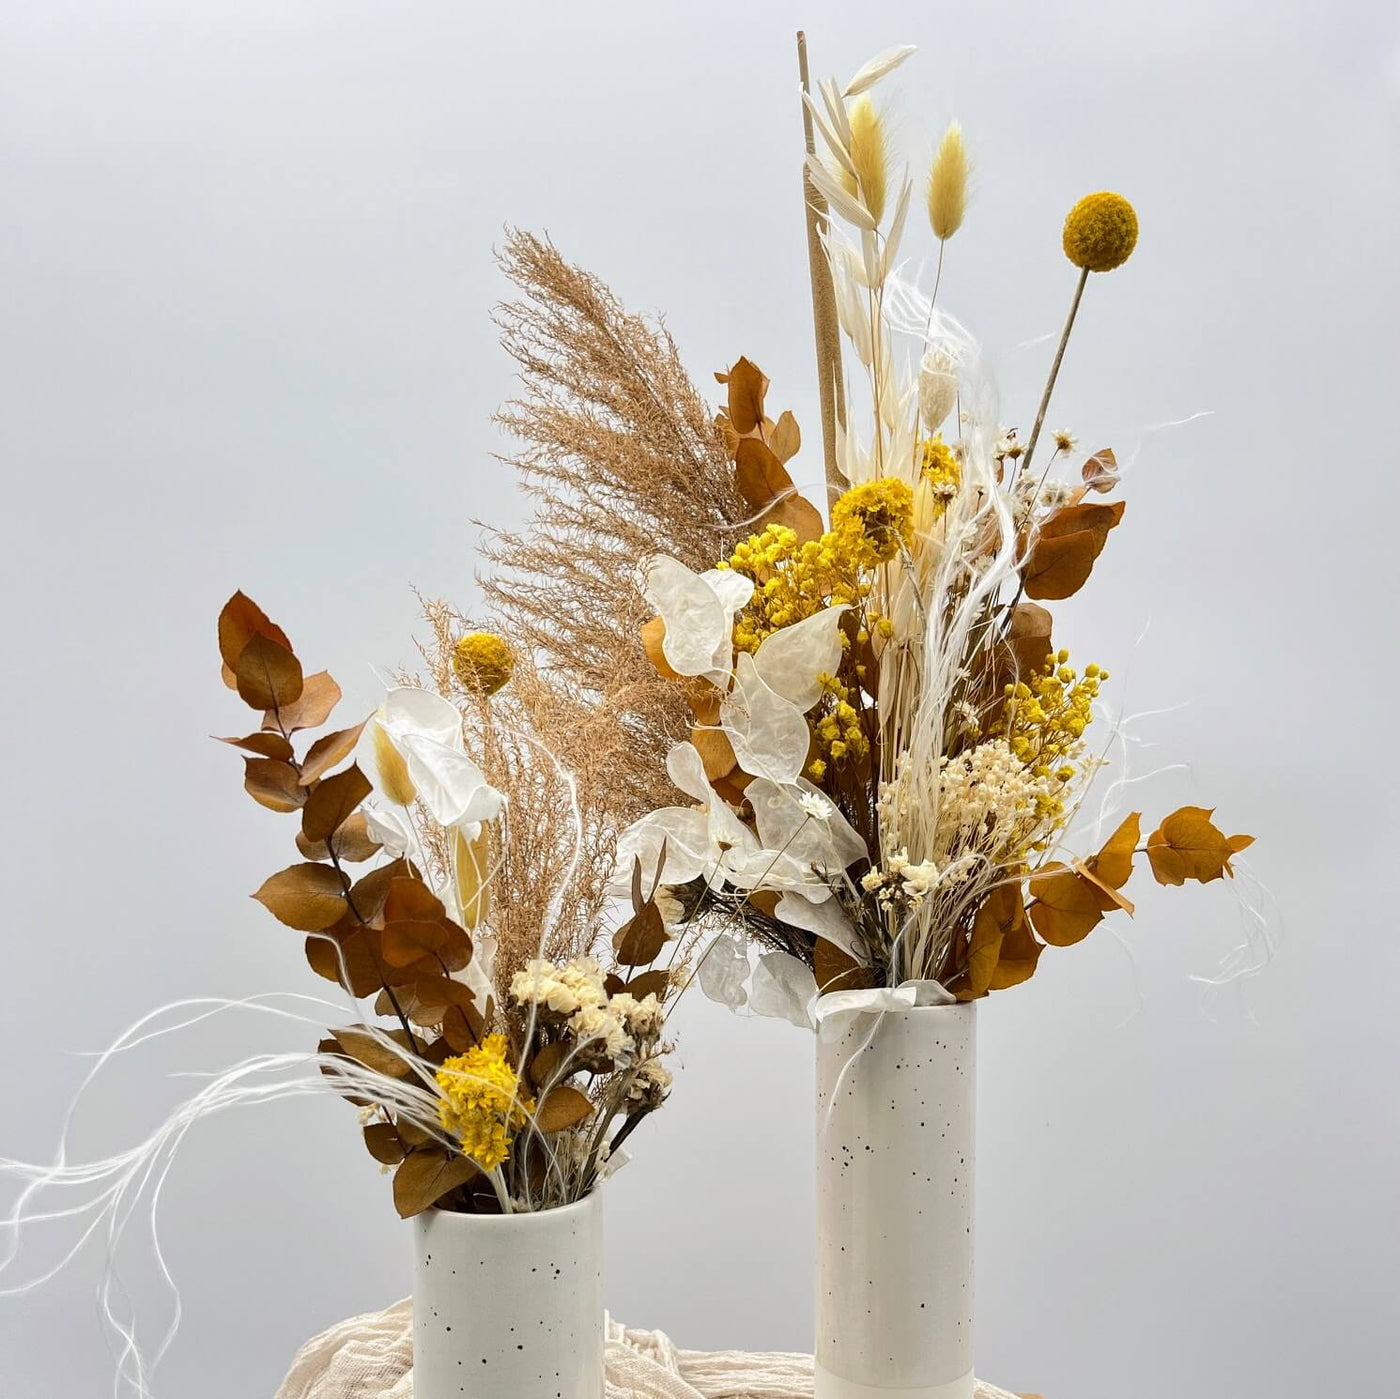 Gelbe Leichtigkeit: Mini-Trockenblumenstrauß mit luftiger Ausstrahlung